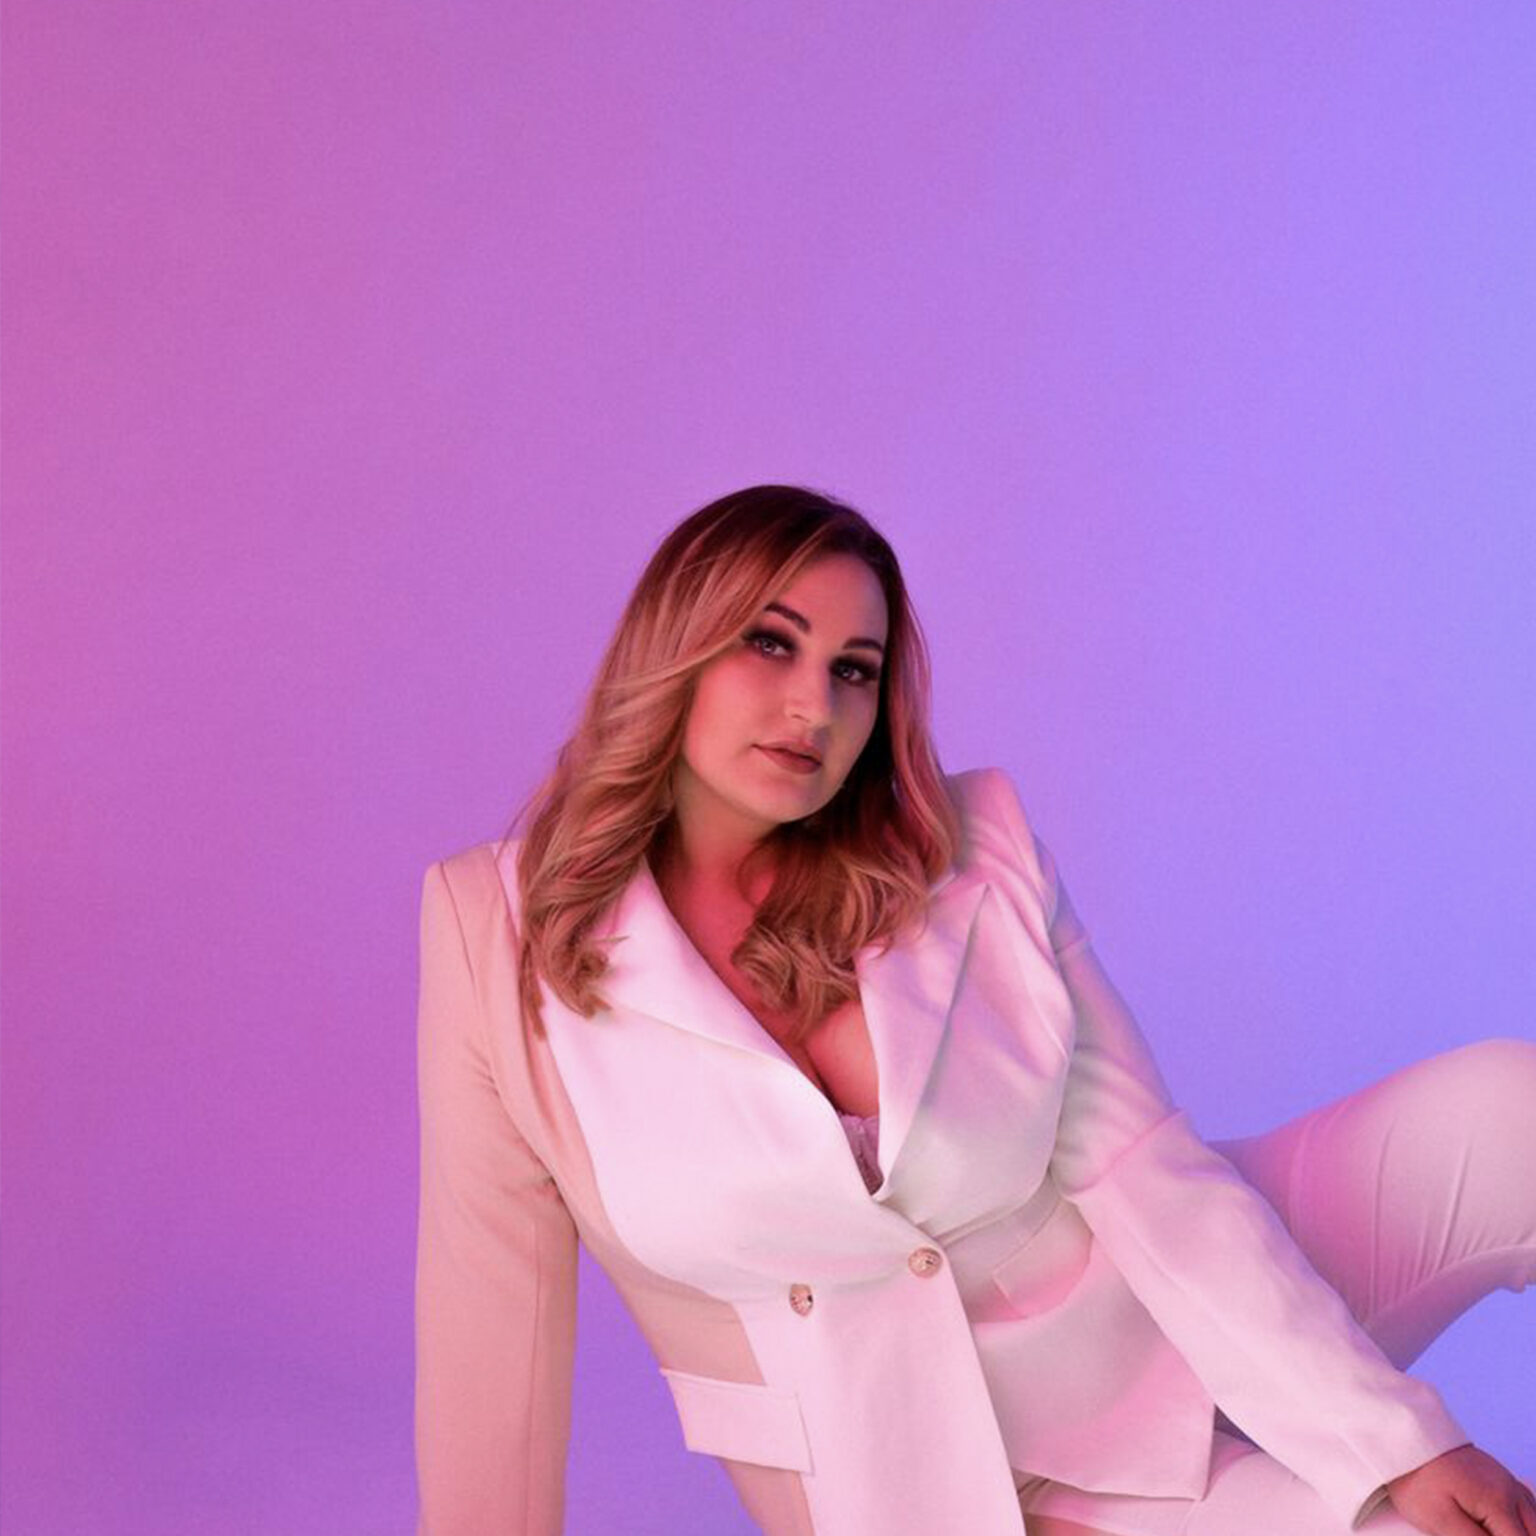 Adriana, pinker Hintergrund, sexy Blick, weißes Outfit